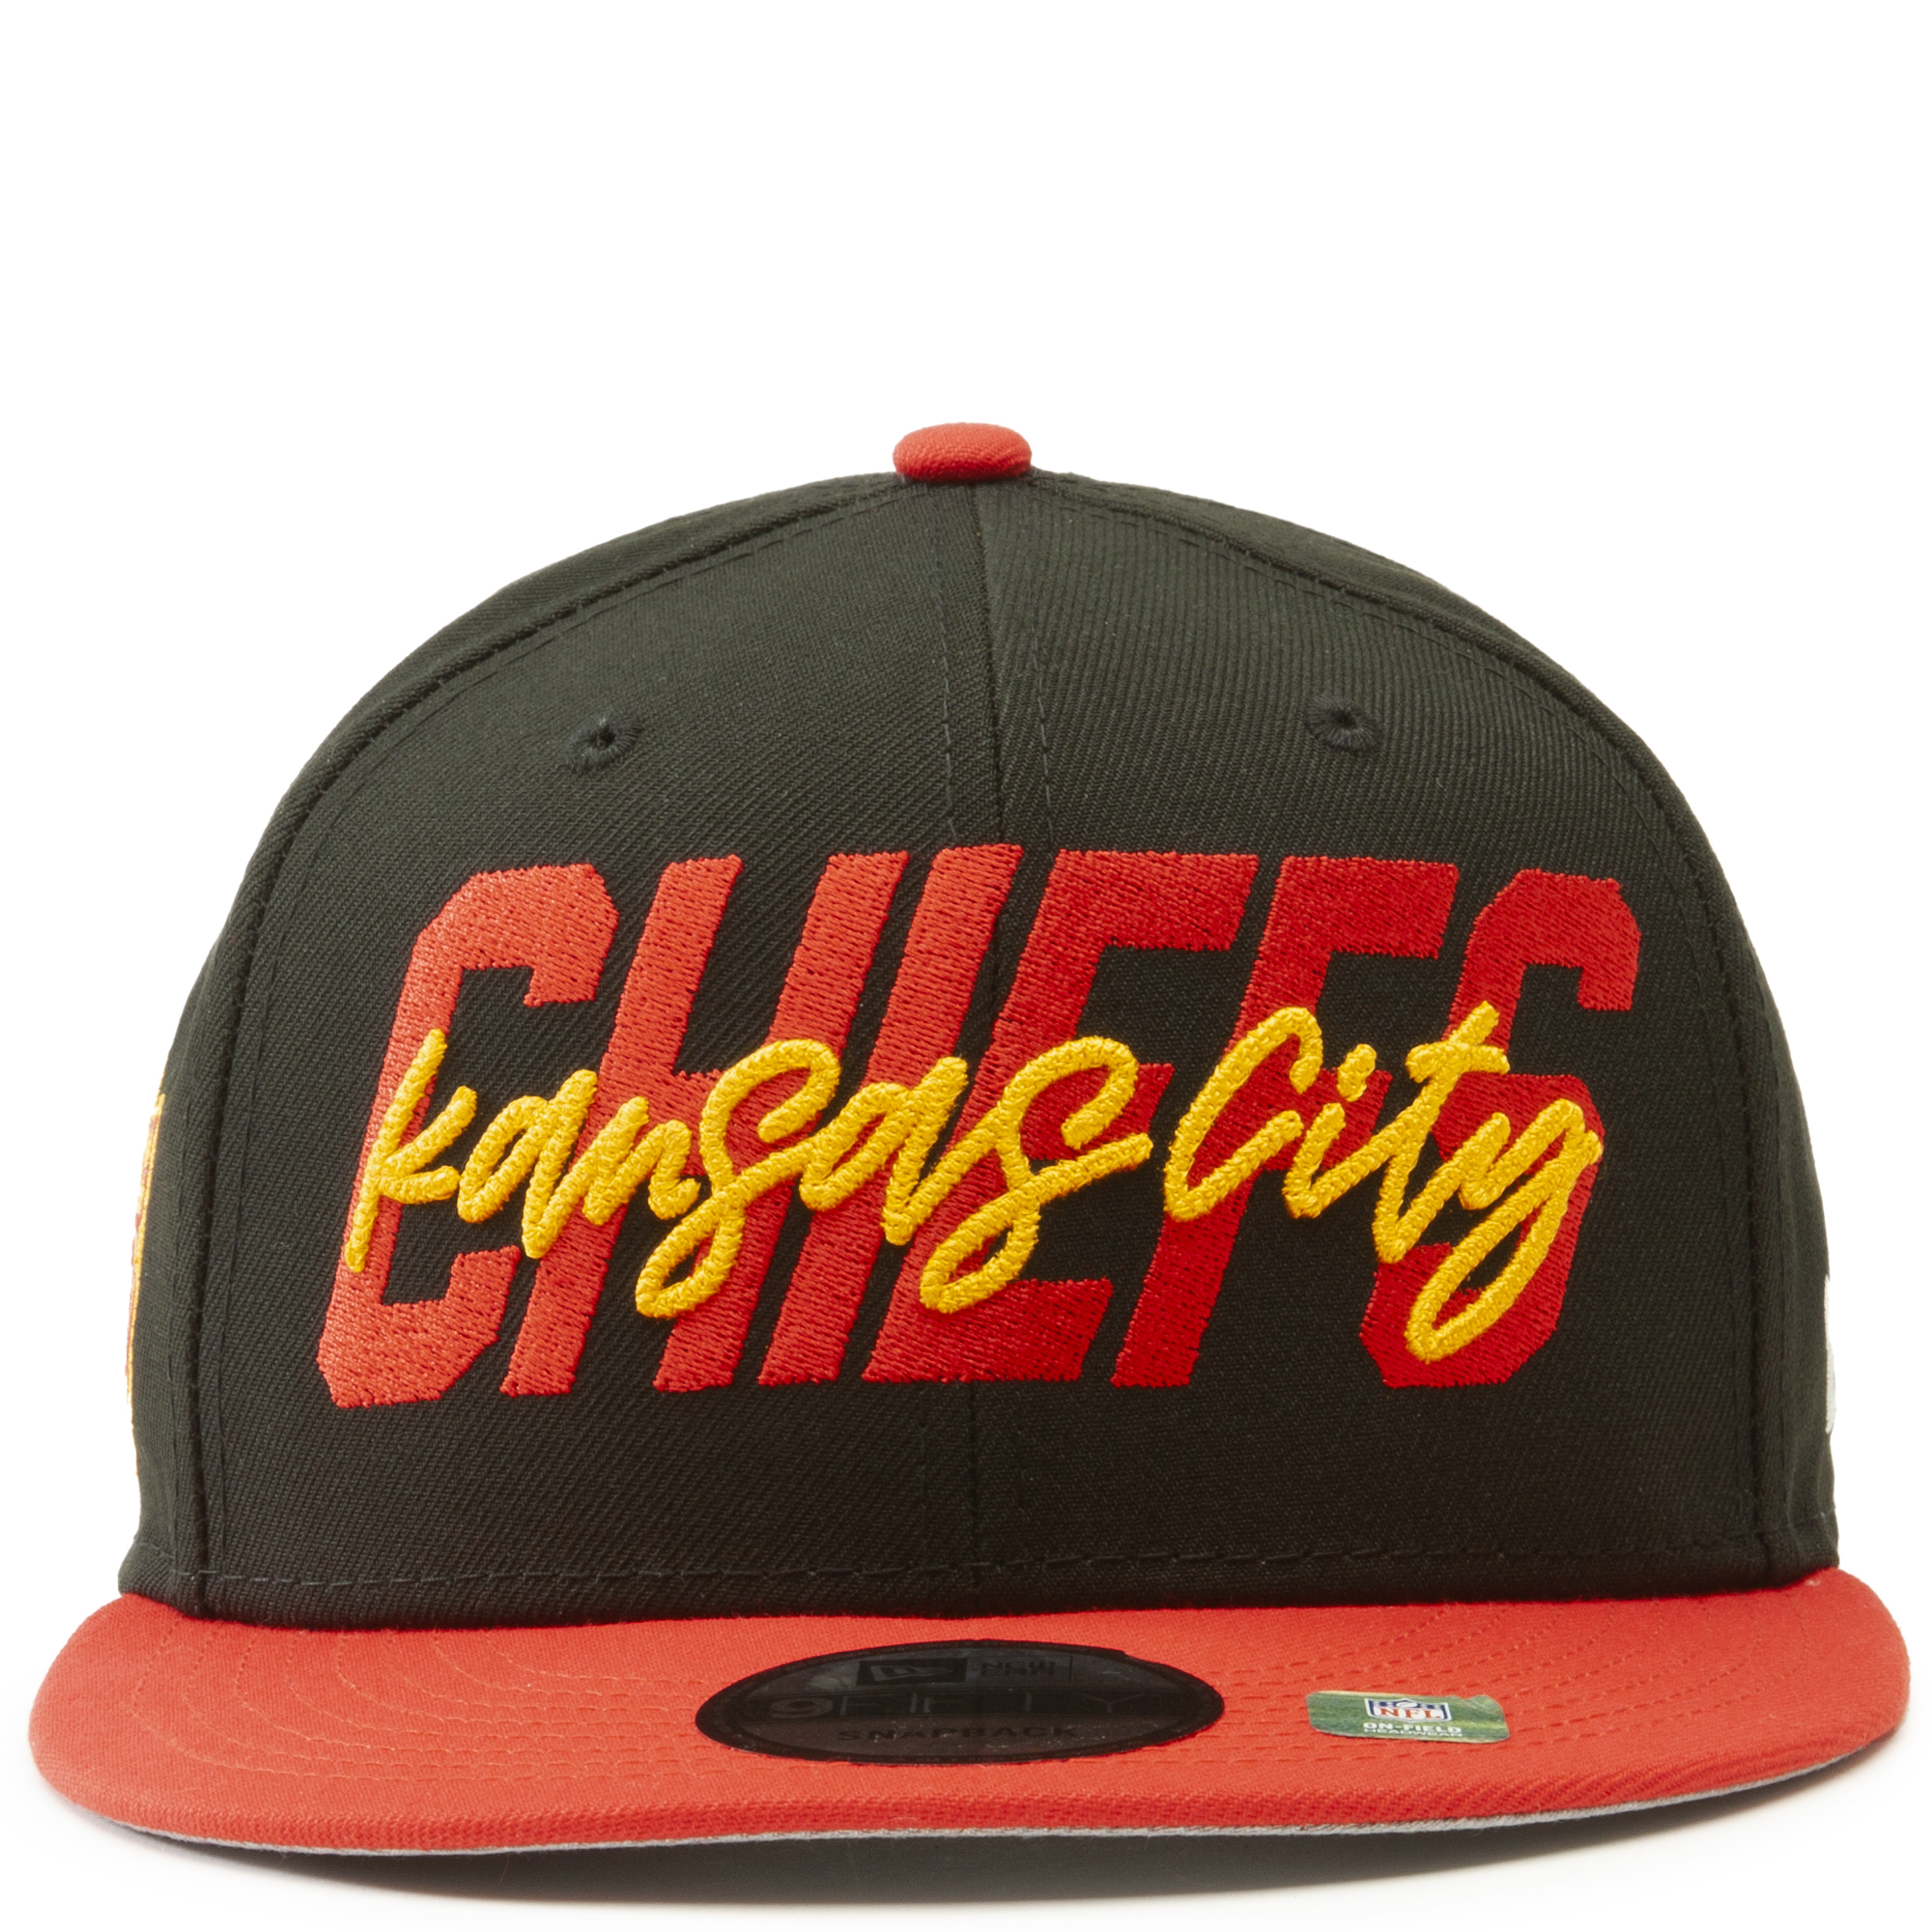 nfl chiefs hat